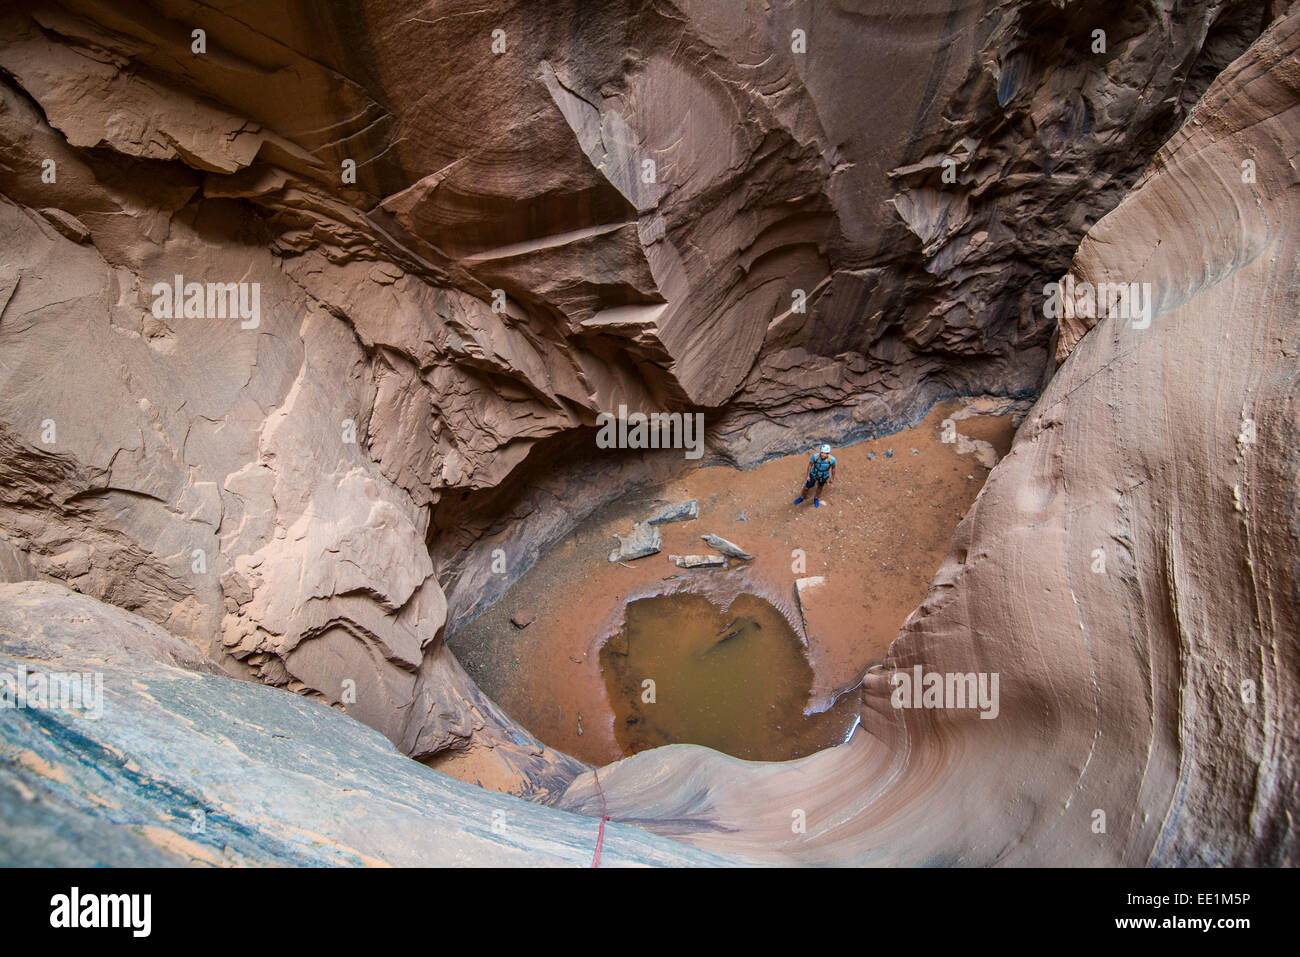 Homme debout dans un slot canyon après le canyoning, Moab, Utah, États-Unis d'Amérique, Amérique du Nord Banque D'Images